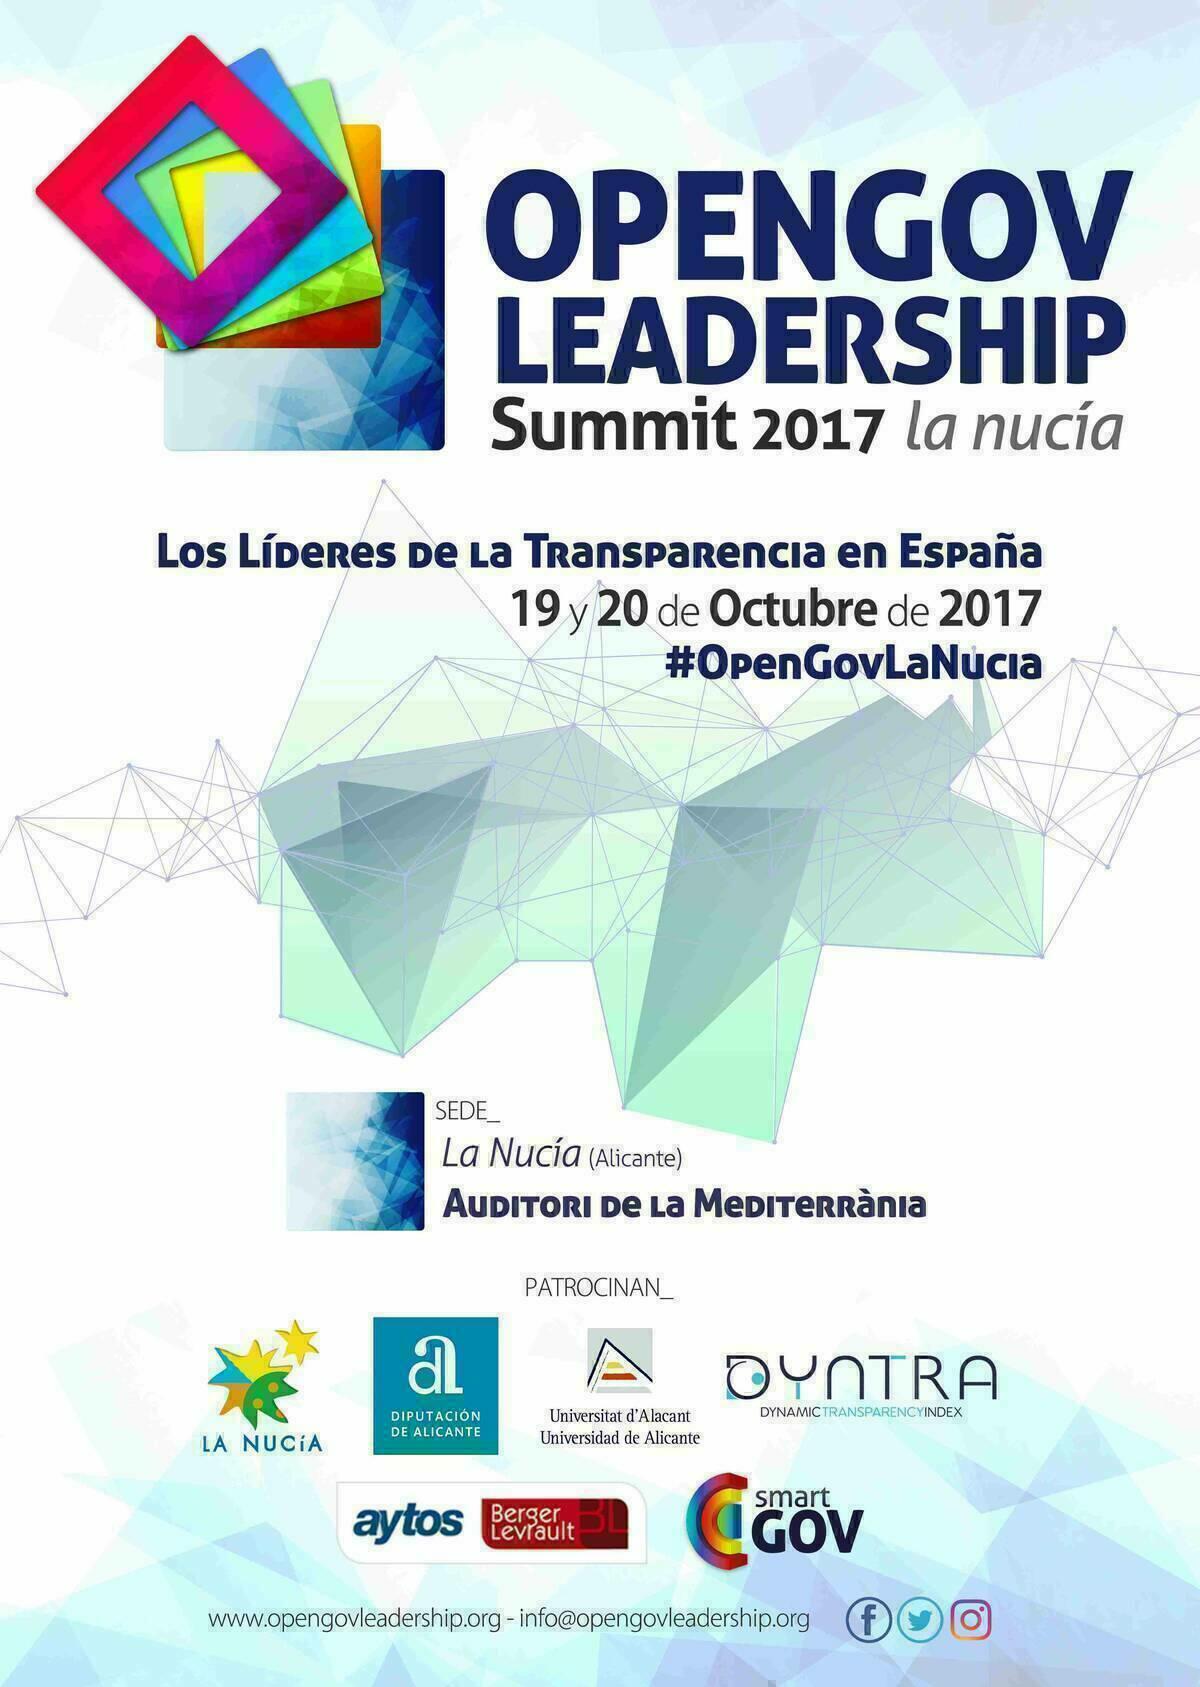 Javier Maroto y Odón Elorza participarán en el congreso  “Los Líderes de la Transparencia en España”